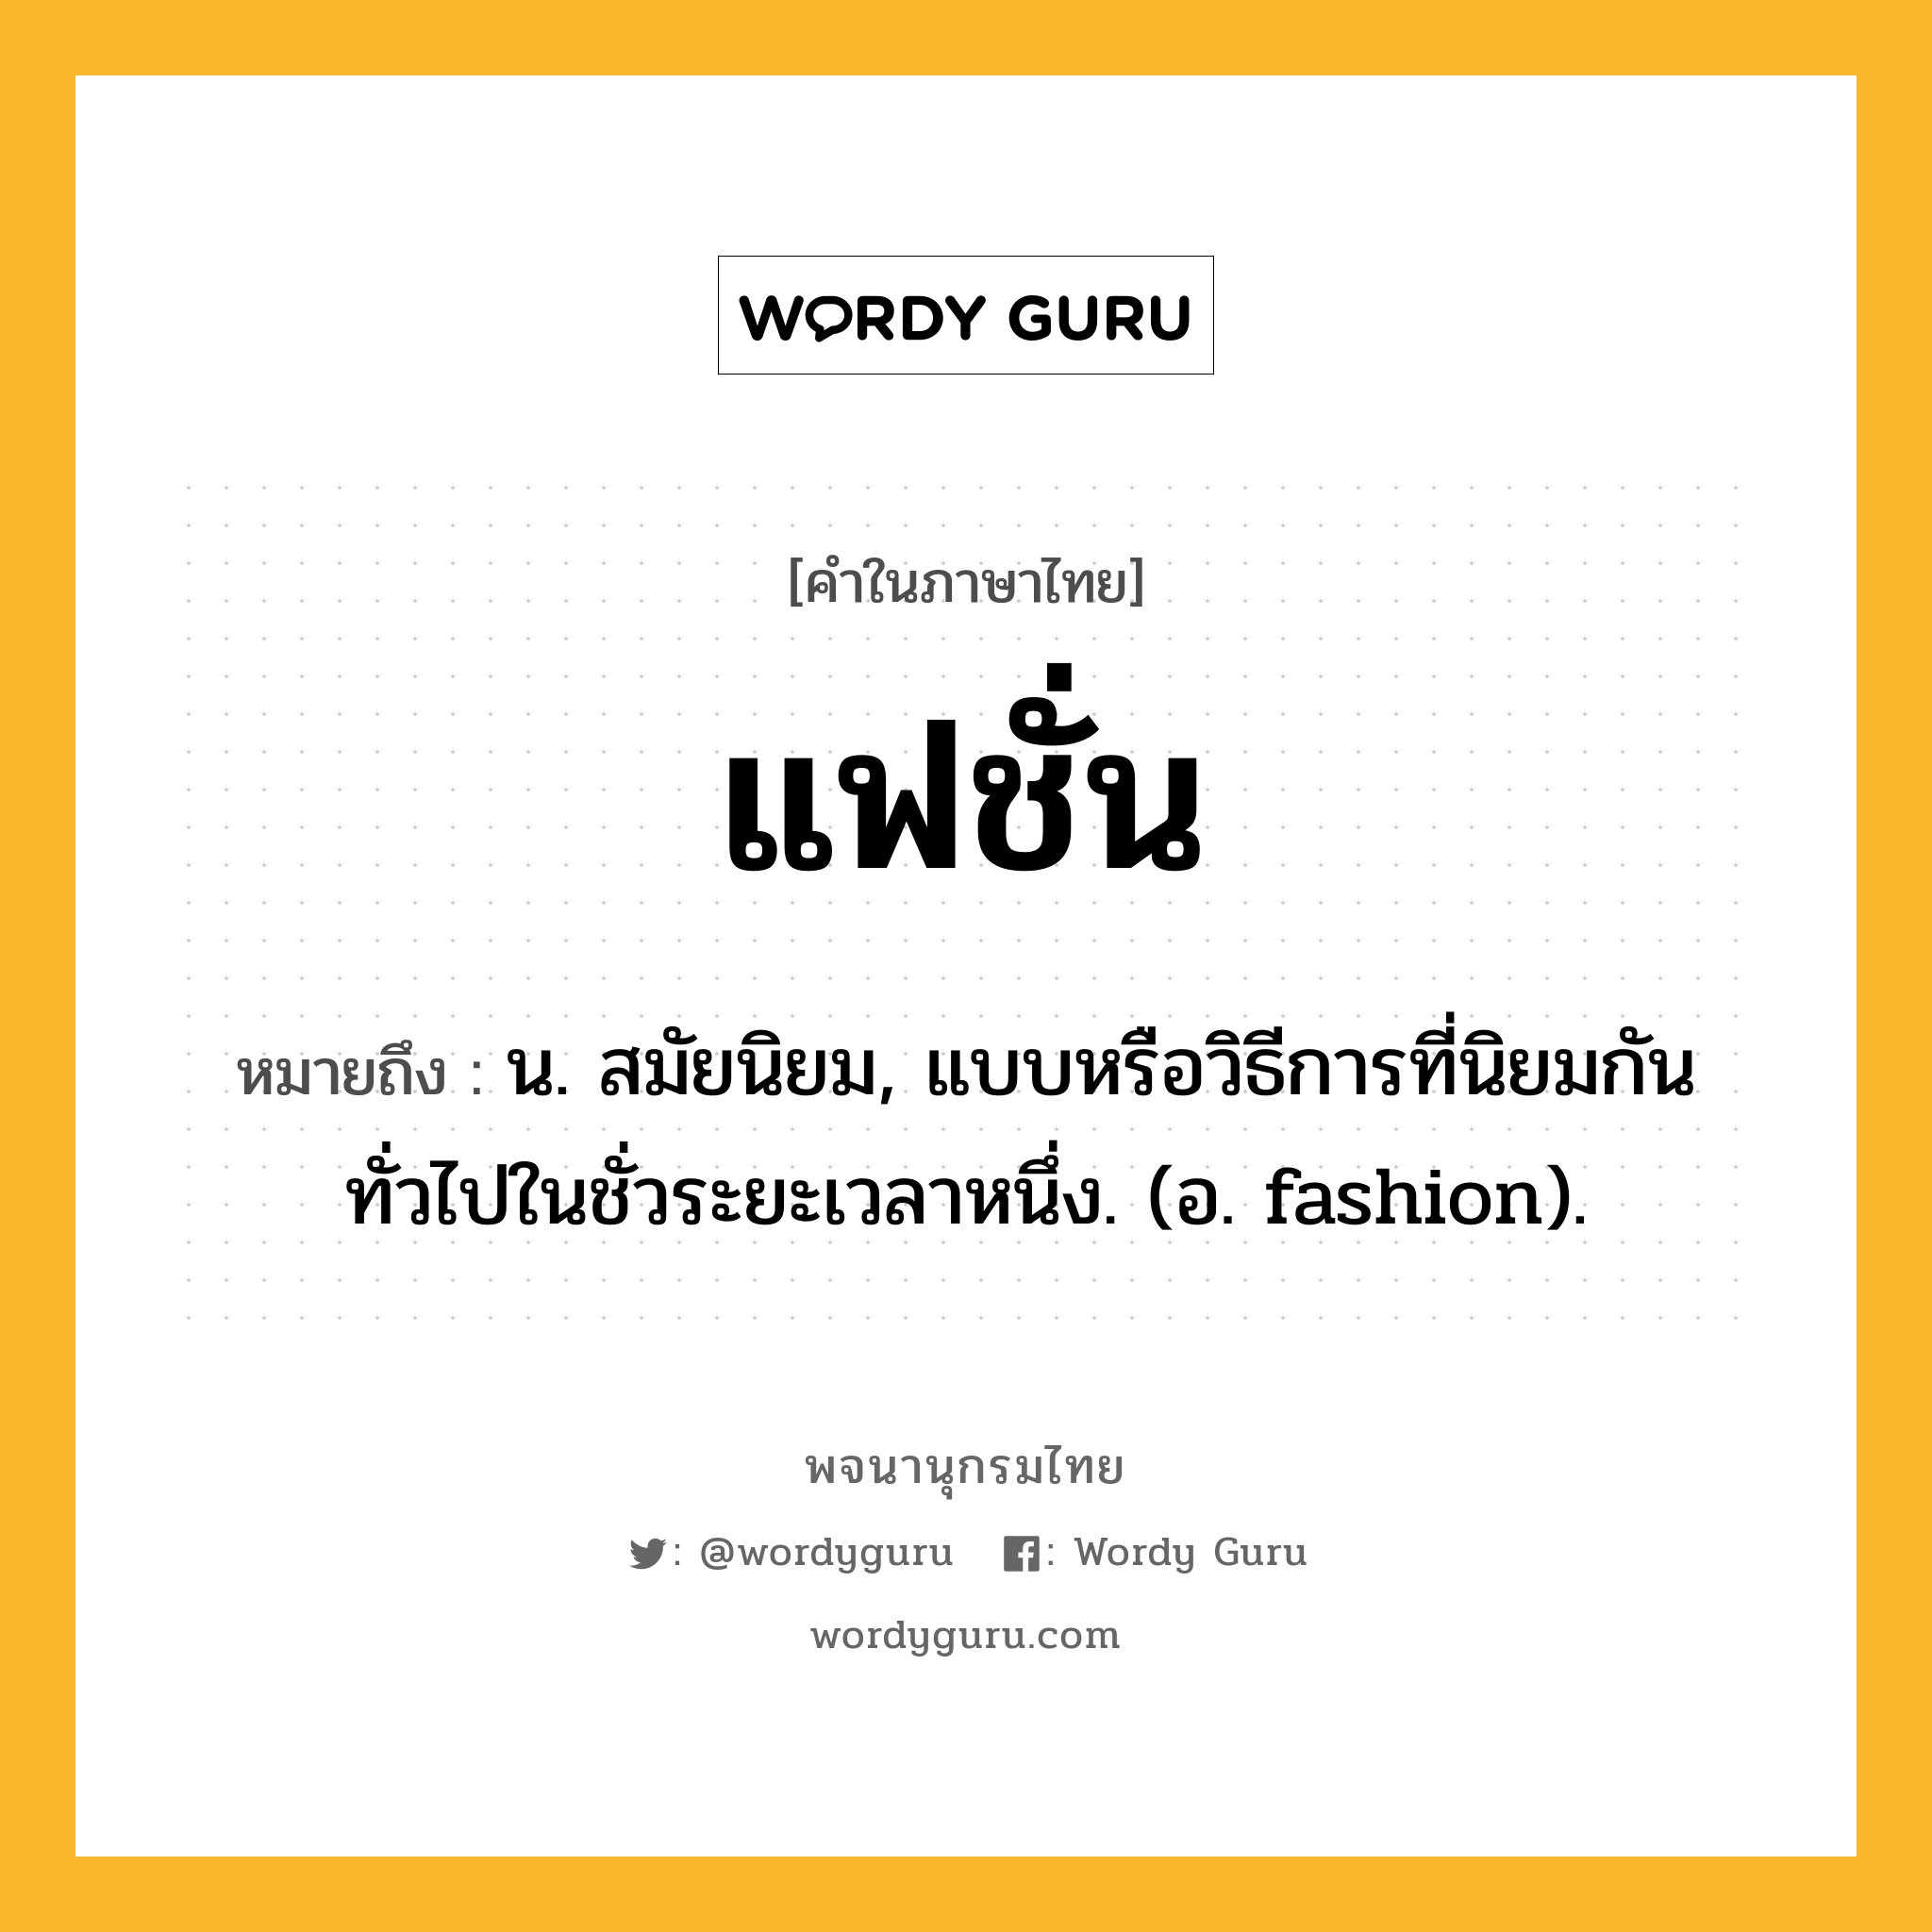 แฟชั่น หมายถึงอะไร?, คำในภาษาไทย แฟชั่น หมายถึง น. สมัยนิยม, แบบหรือวิธีการที่นิยมกันทั่วไปในชั่วระยะเวลาหนึ่ง. (อ. fashion).